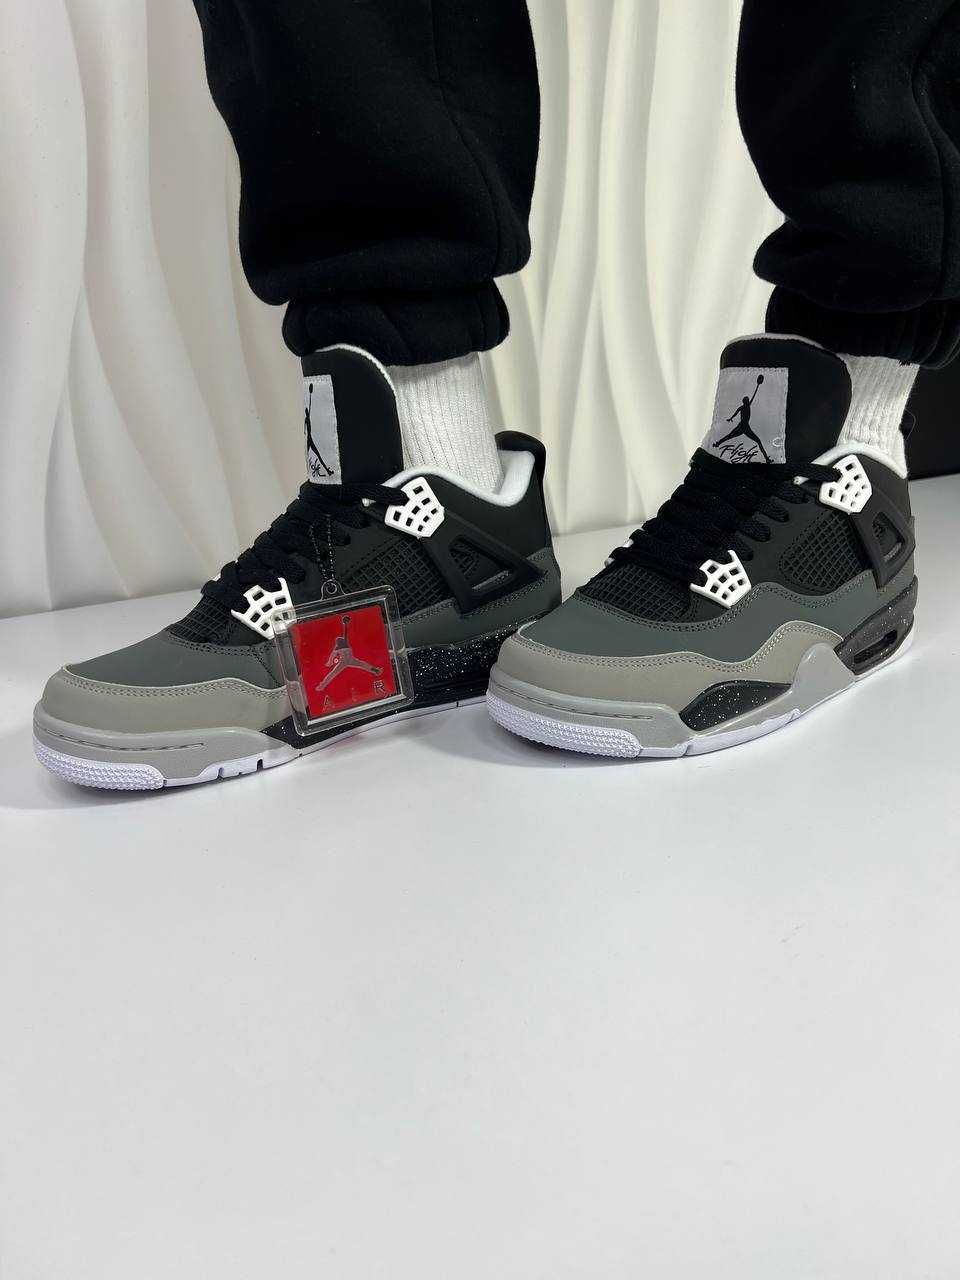 РОЗПРОДАЖА!! Кросівки Nike Air Jordan 4 Retro, Мужски Найк Аїр Джордан